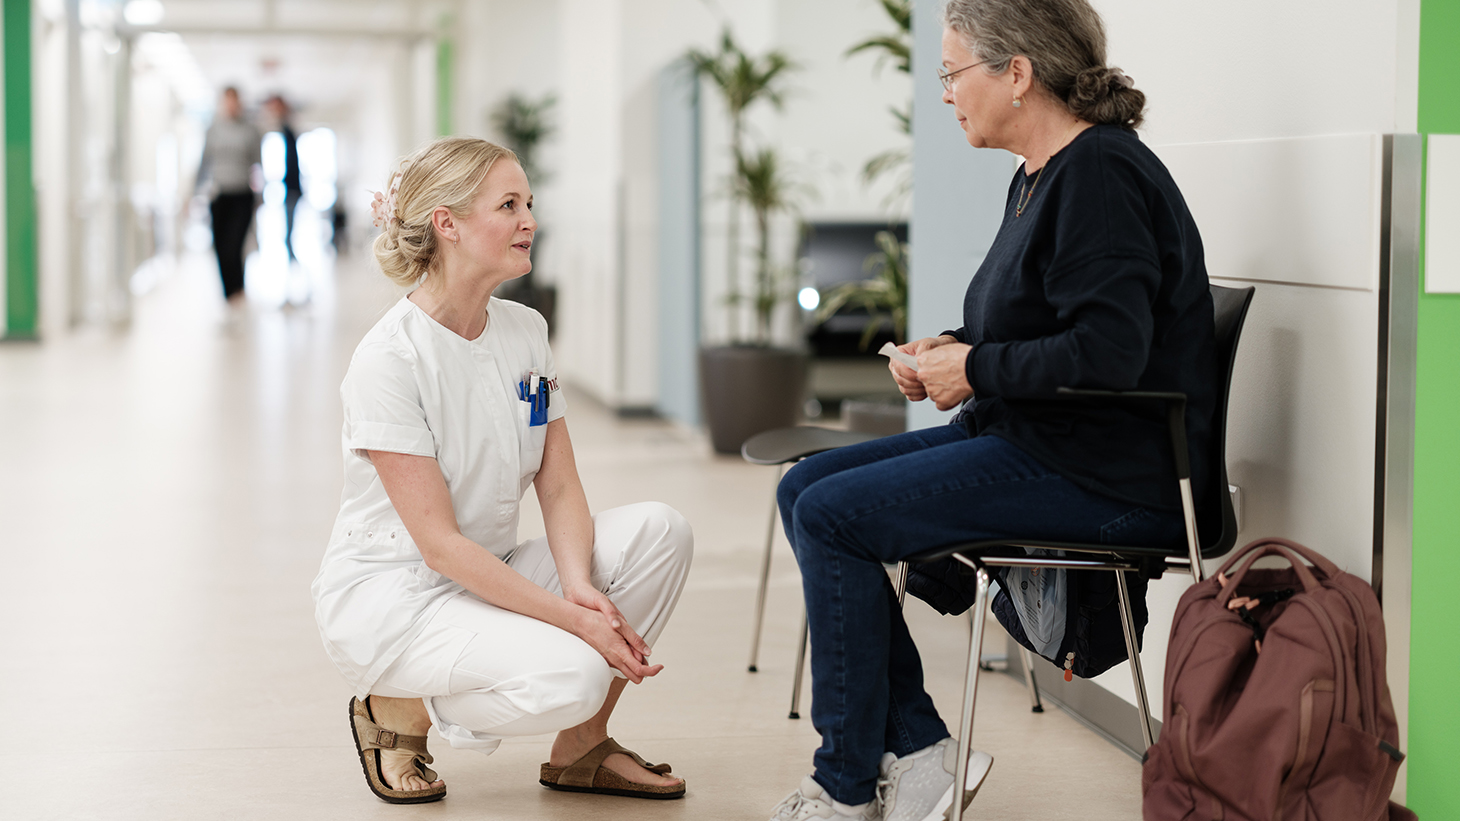 Sygeplejerske taler med patient i venteområde